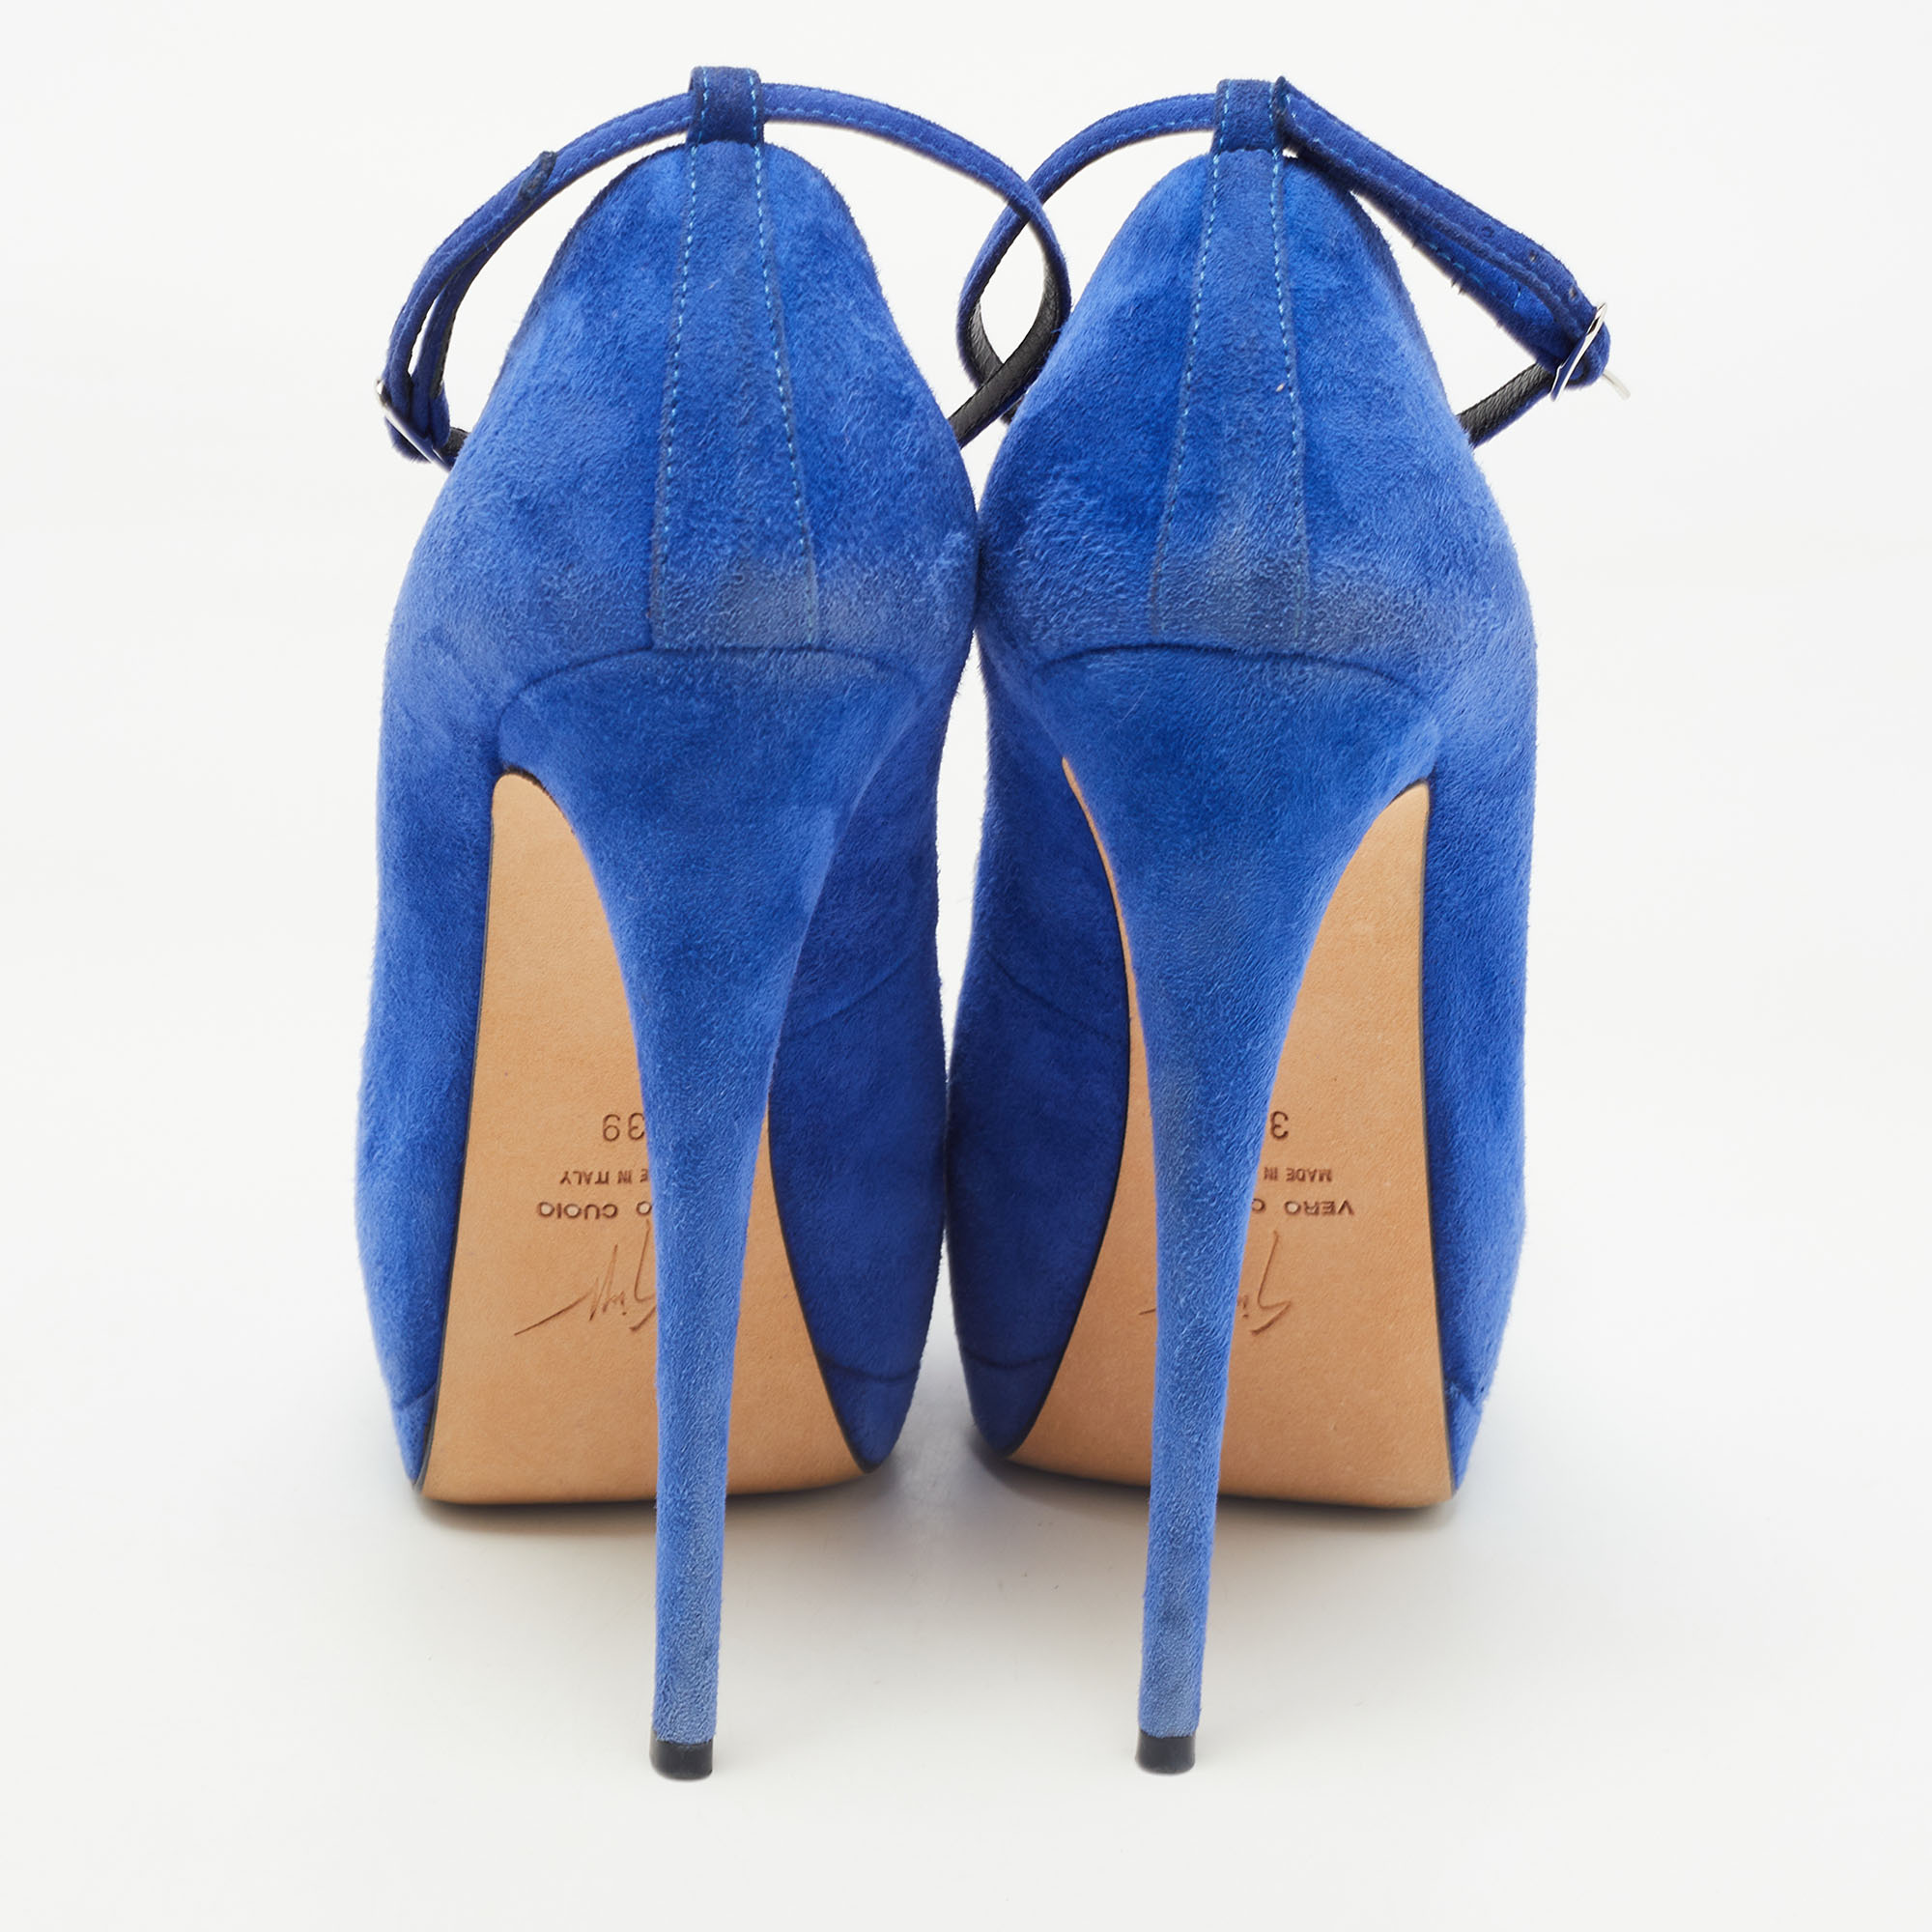 Giuseppe Zanotti Blue Suede Flower Applique Peep Toe Platform Ankle Strap Pumps Size 39